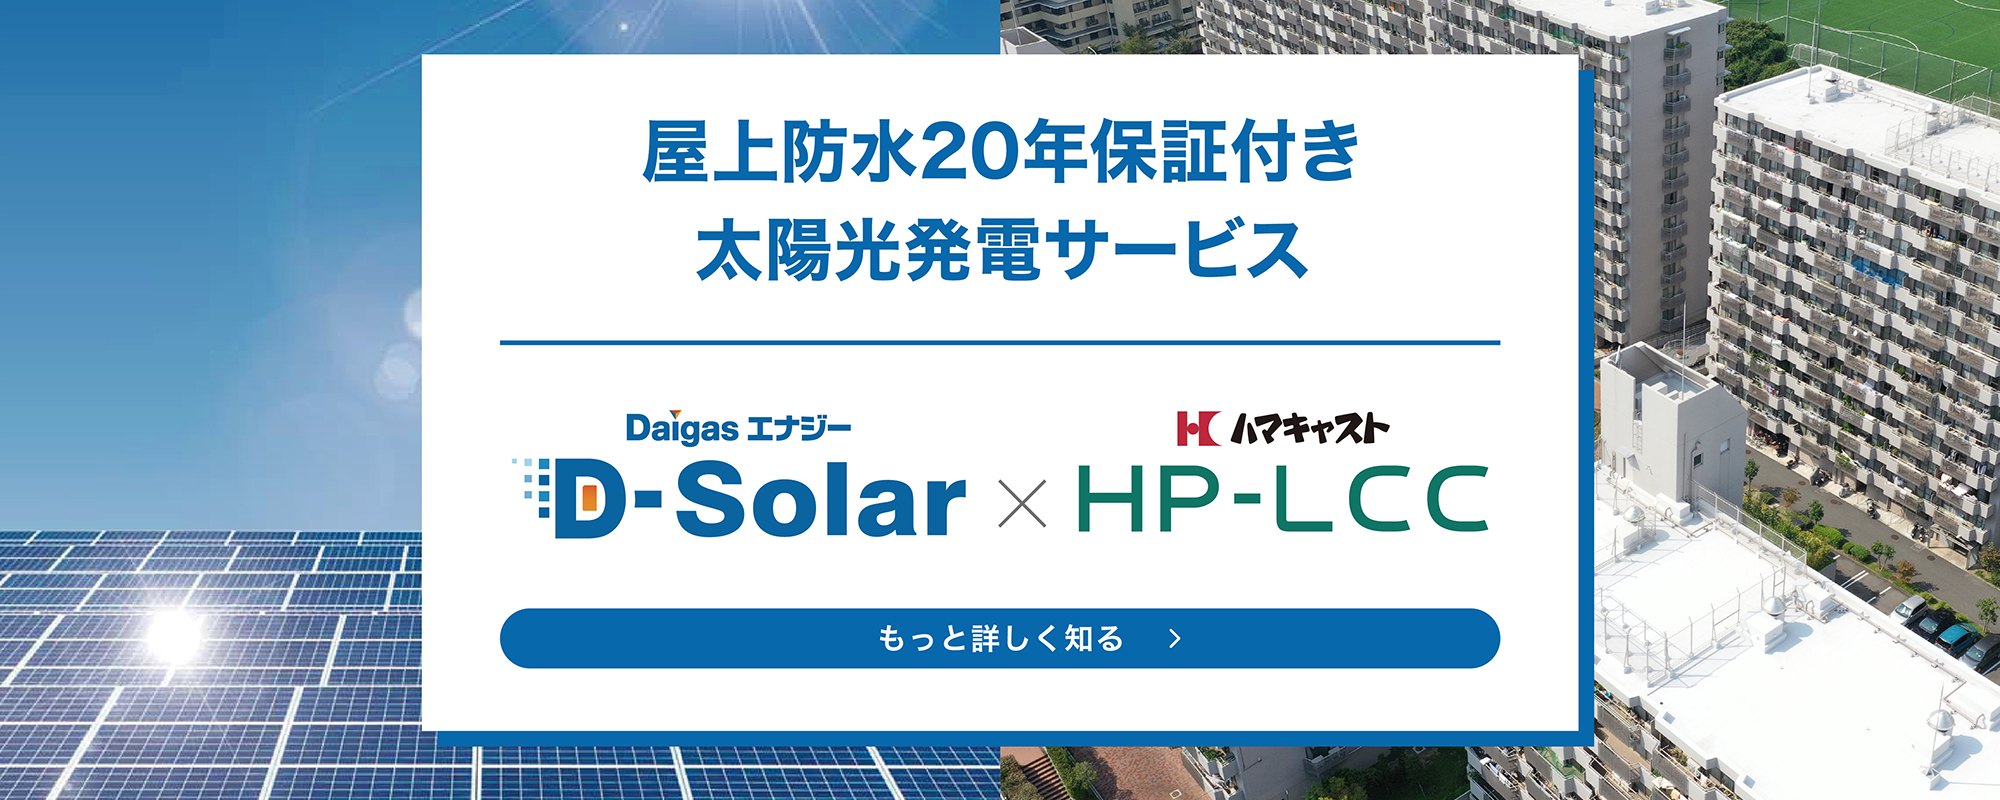 屋上防水20年保証付き太陽光発電サービス「DaigasエナジーD-Solar×ハマキャストHP-LCC【もっと詳しく知る】」